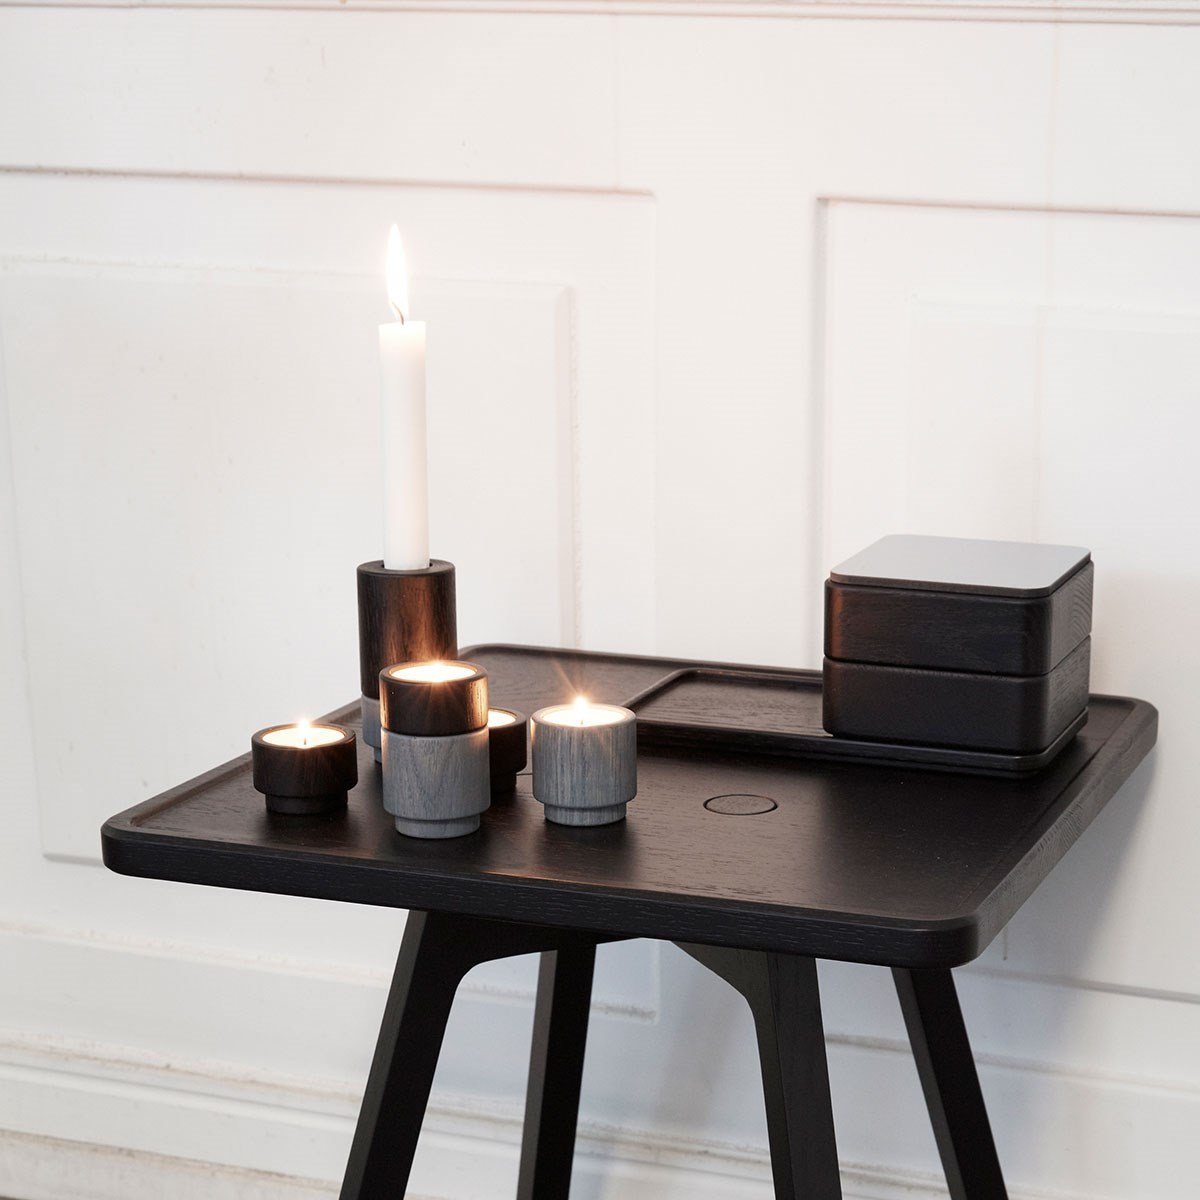 Andersen Furniture Create Me Tealight Holder Ocean Grey, 5 cm